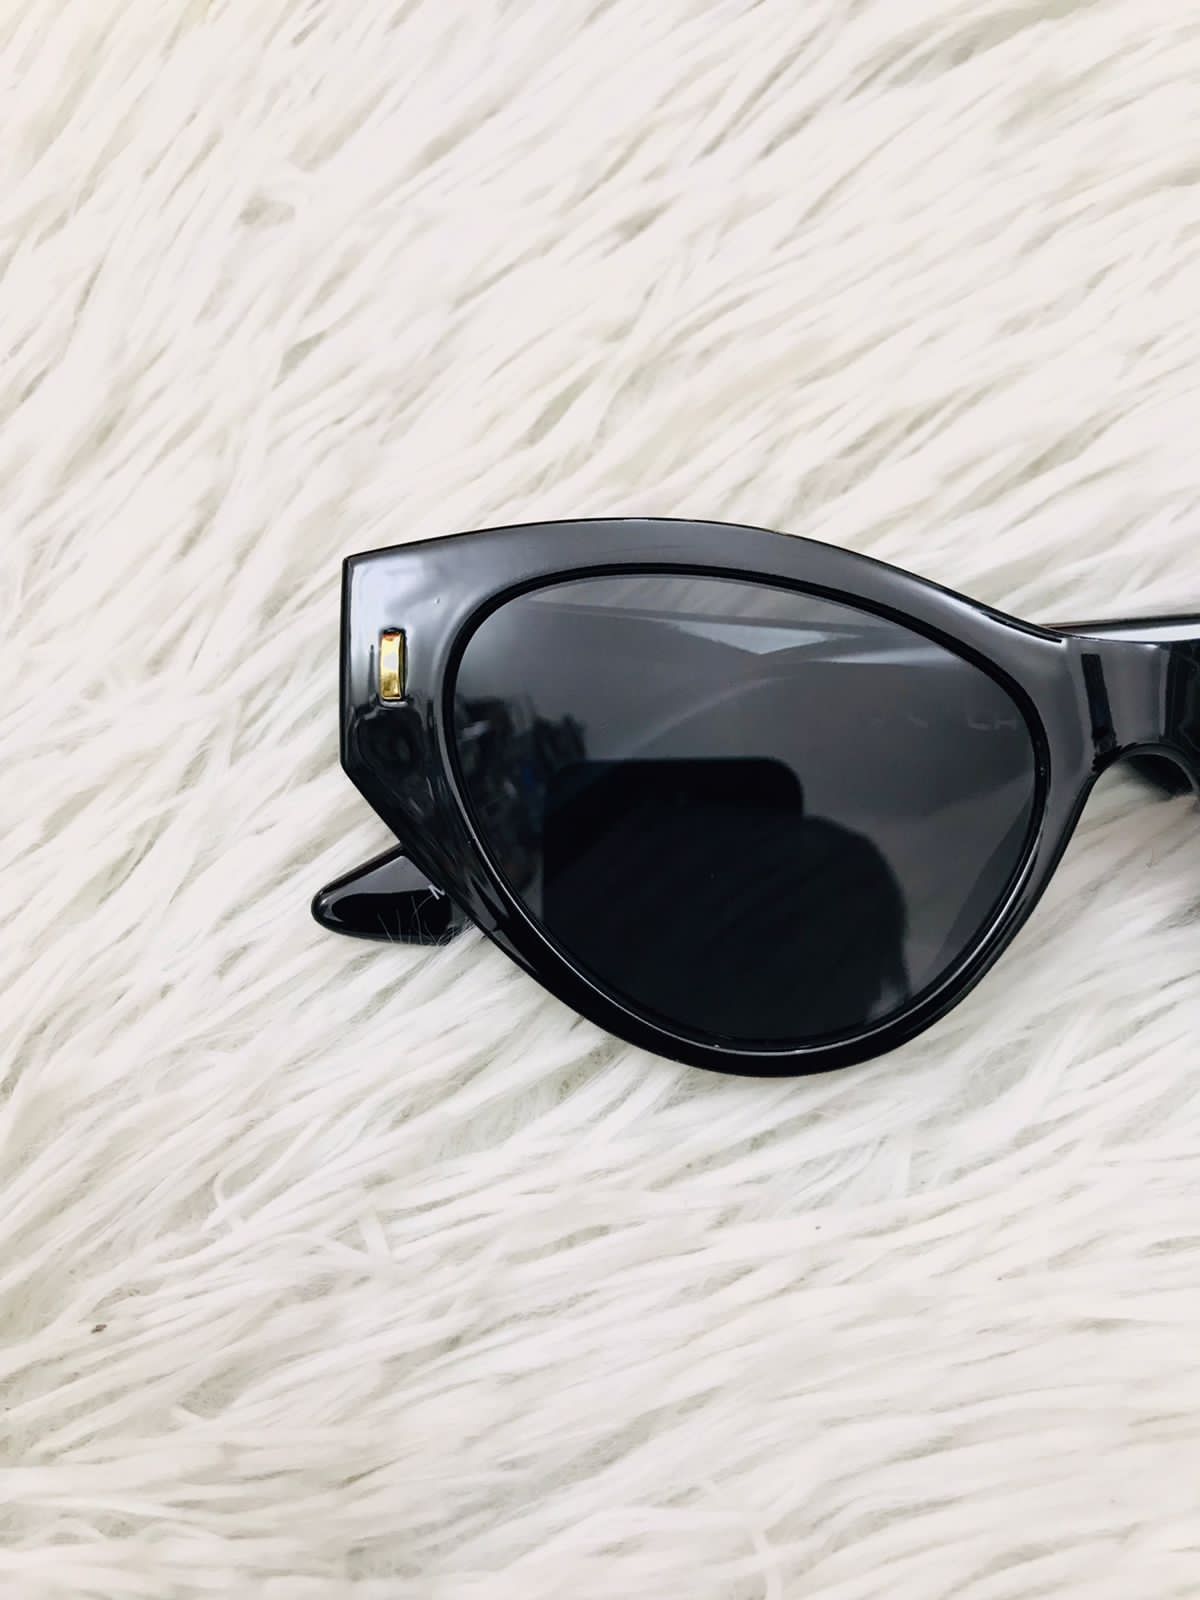 Lentes Fashion Nova original negro estilo ojo de gato y pequeño detalle en dorado al lado, PROTECCIÓN UV 100%.